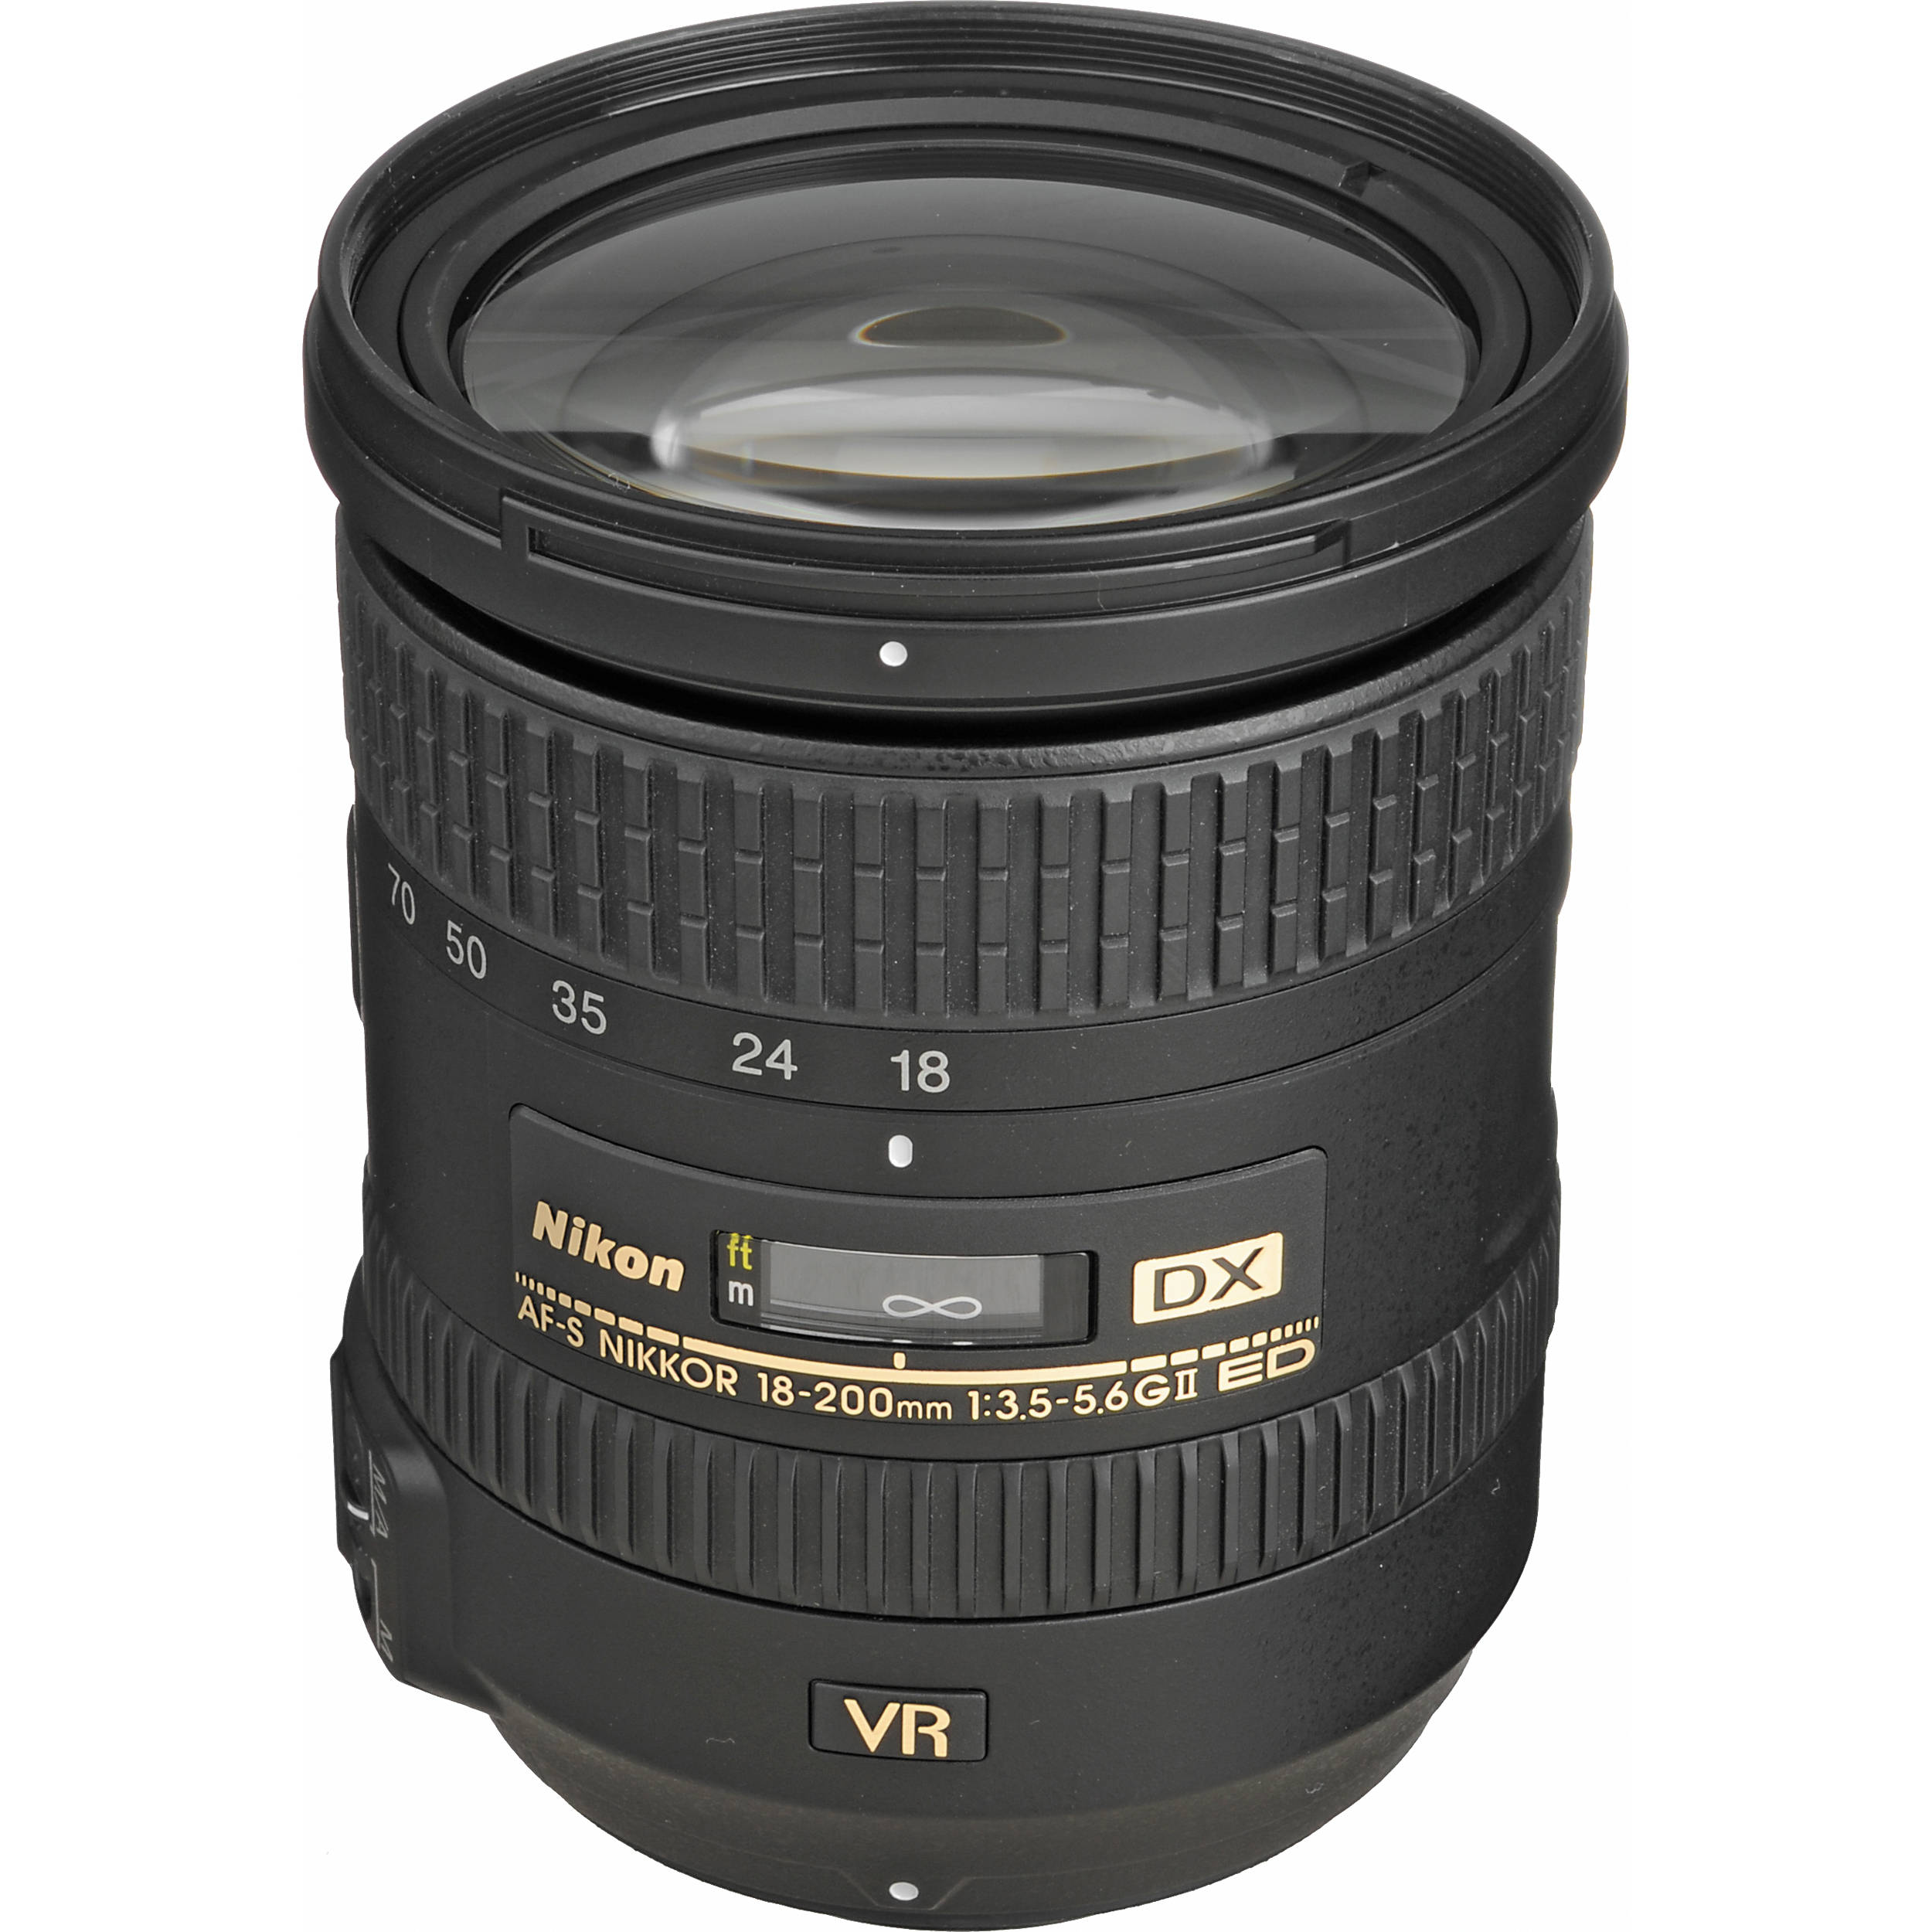 Nikon AF-S DX Nikkor 18-200mm F/3.5-5.6G ED VR II (Mới 100%) - Bảo hành chính hãng VIC-VN 02 năm trên toàn quốc Cover